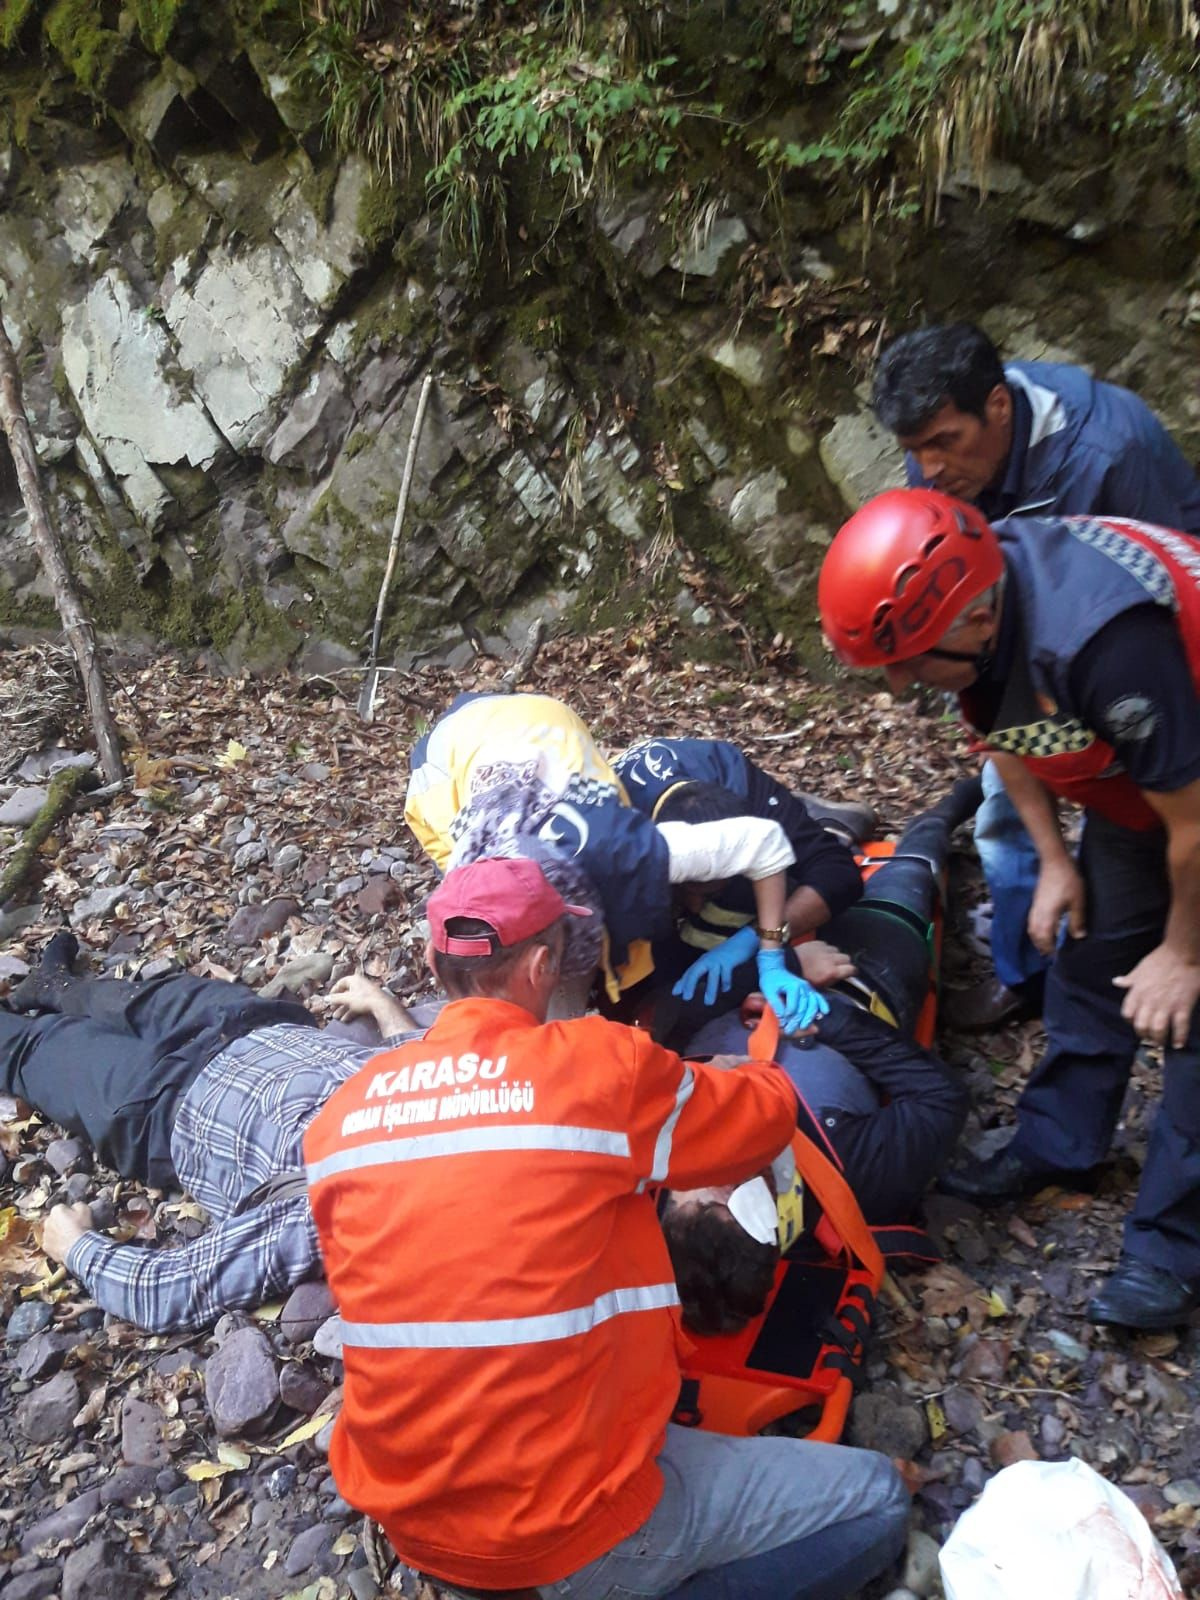 Sakarya'da kestane toplarken kayalıklardan yuvarlanan baba öldü oğlu yaralı